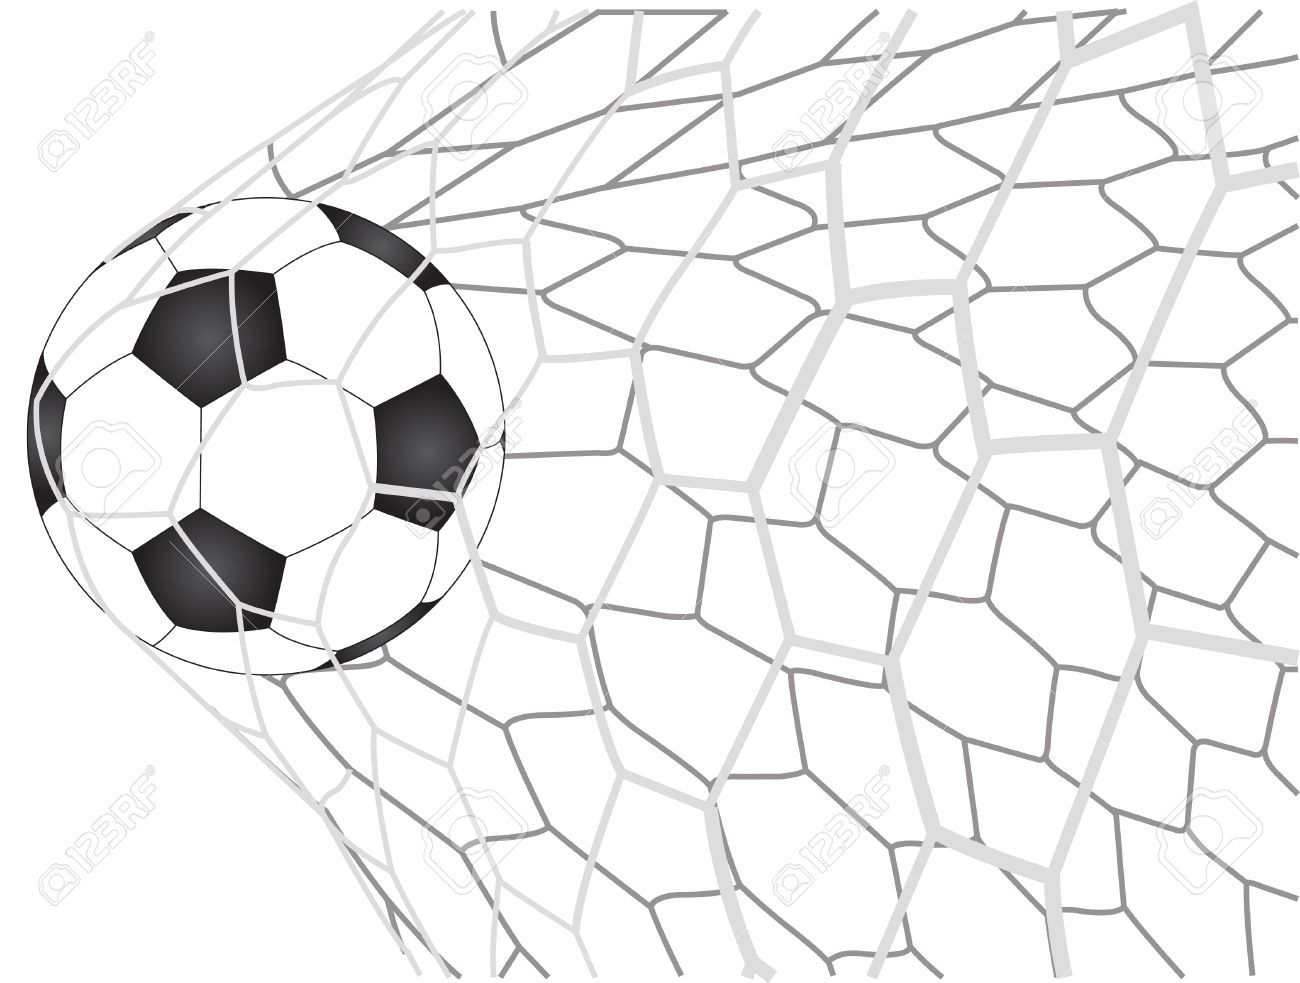 Soccer net clipart